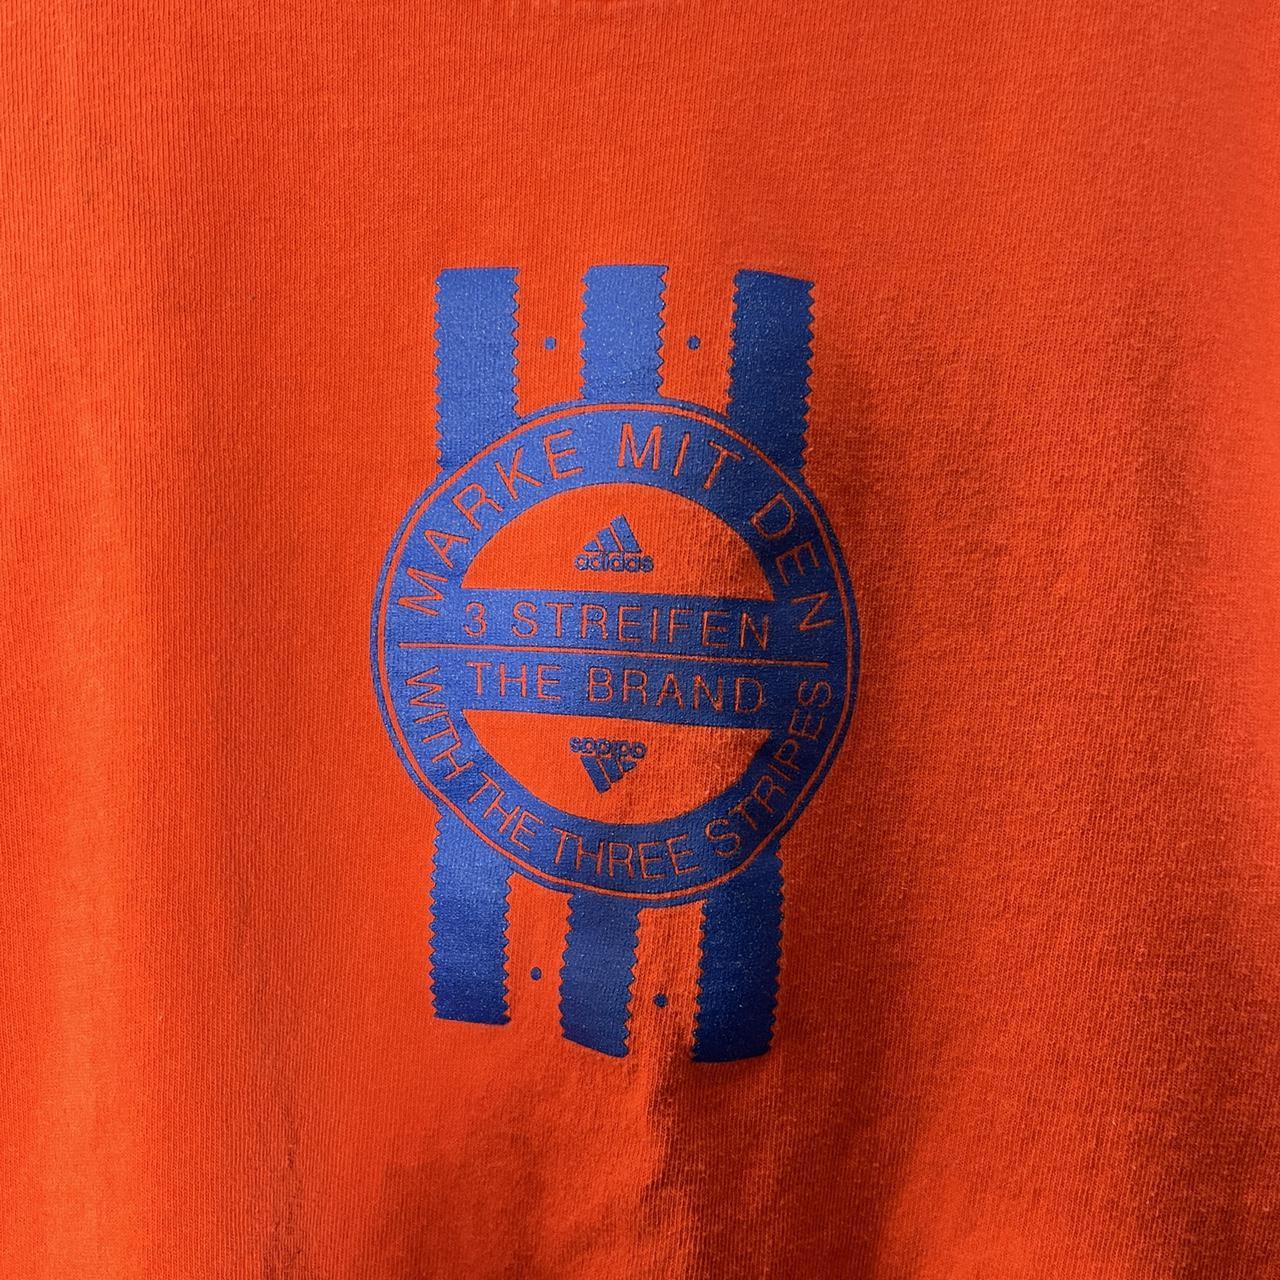 Product Image 2 - Adidas Shirt

•Unisex Vintage Orange Adidas